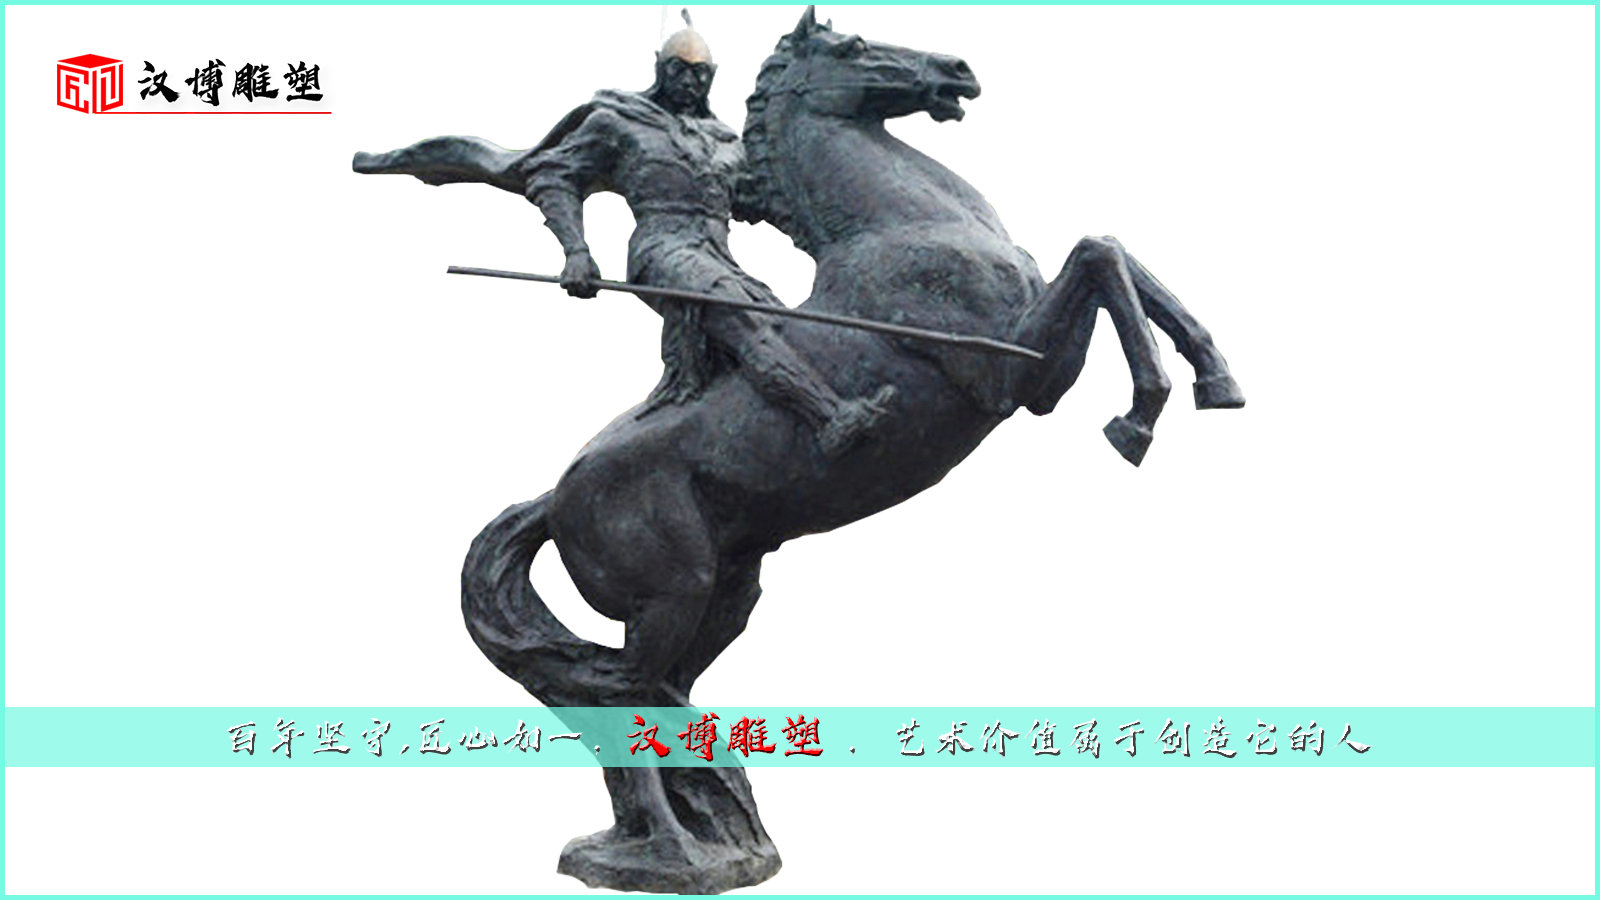 人物骑马雕像,园林景观铜雕,大型景观雕塑骑马文化雕塑,人物铸铜雕像